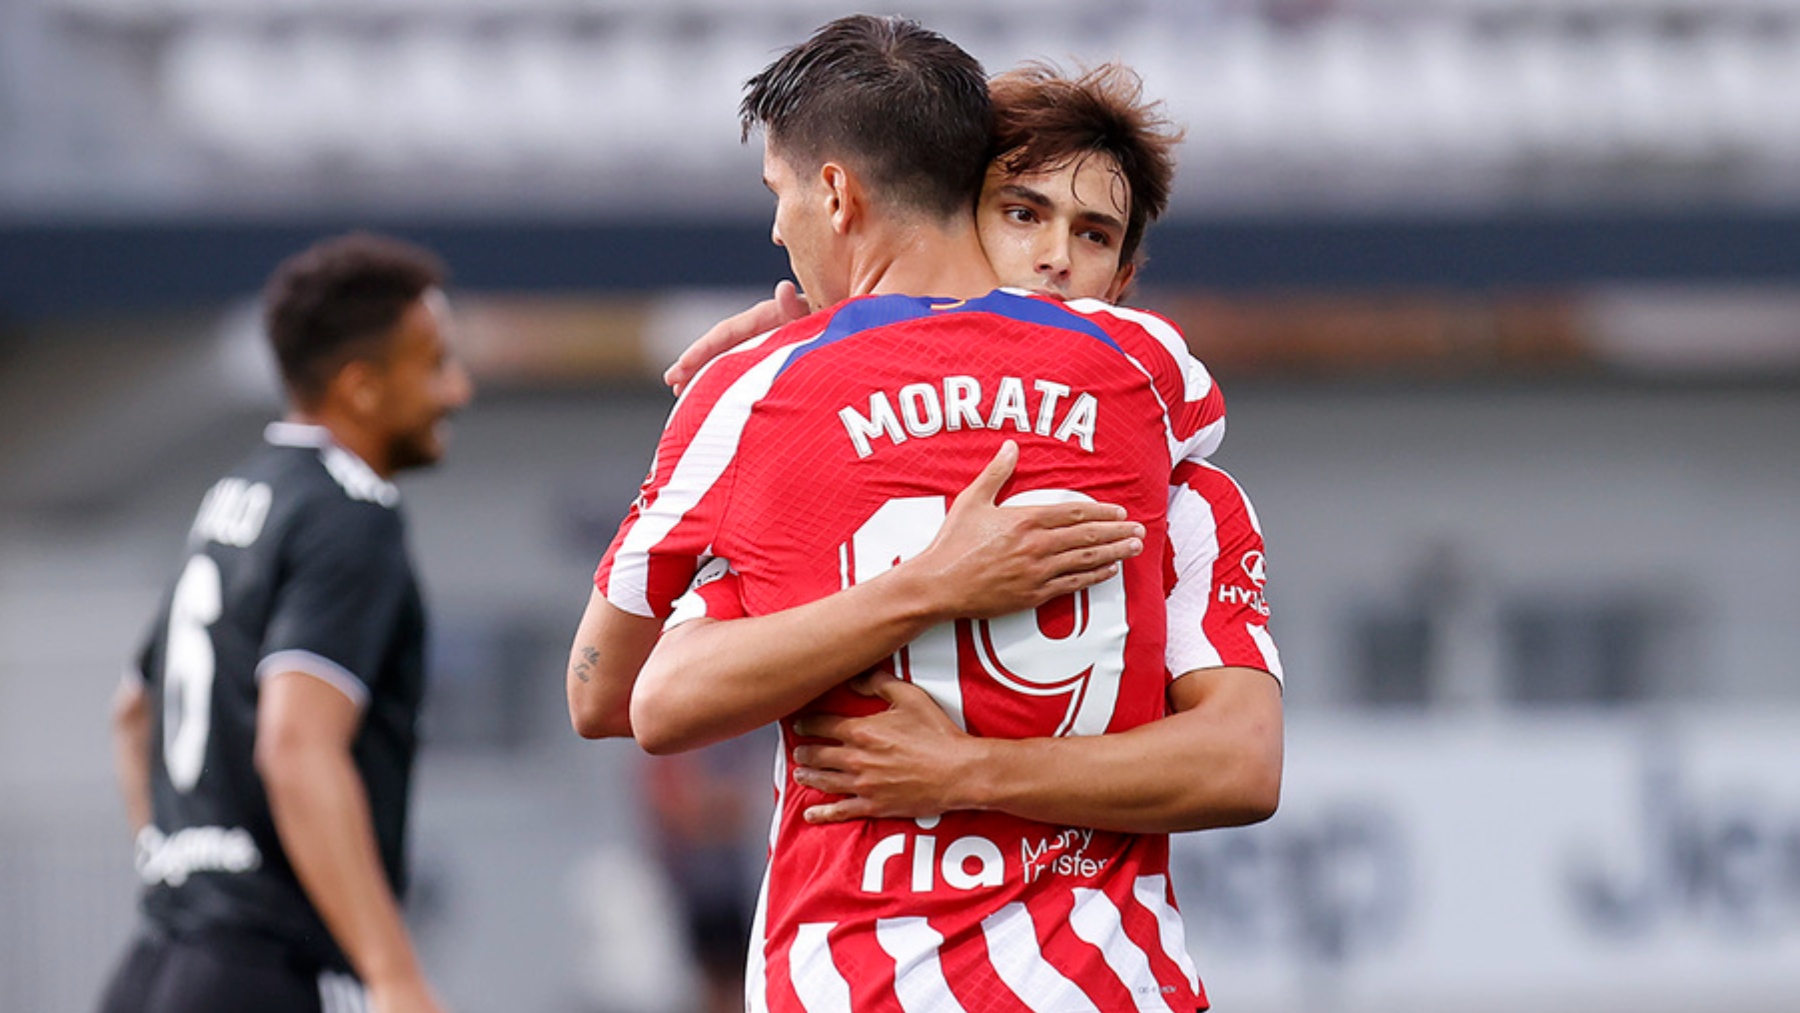 Morata y Joao Félix se abrazan tras un gol ante la Juventus. (Atlético de Madrid))